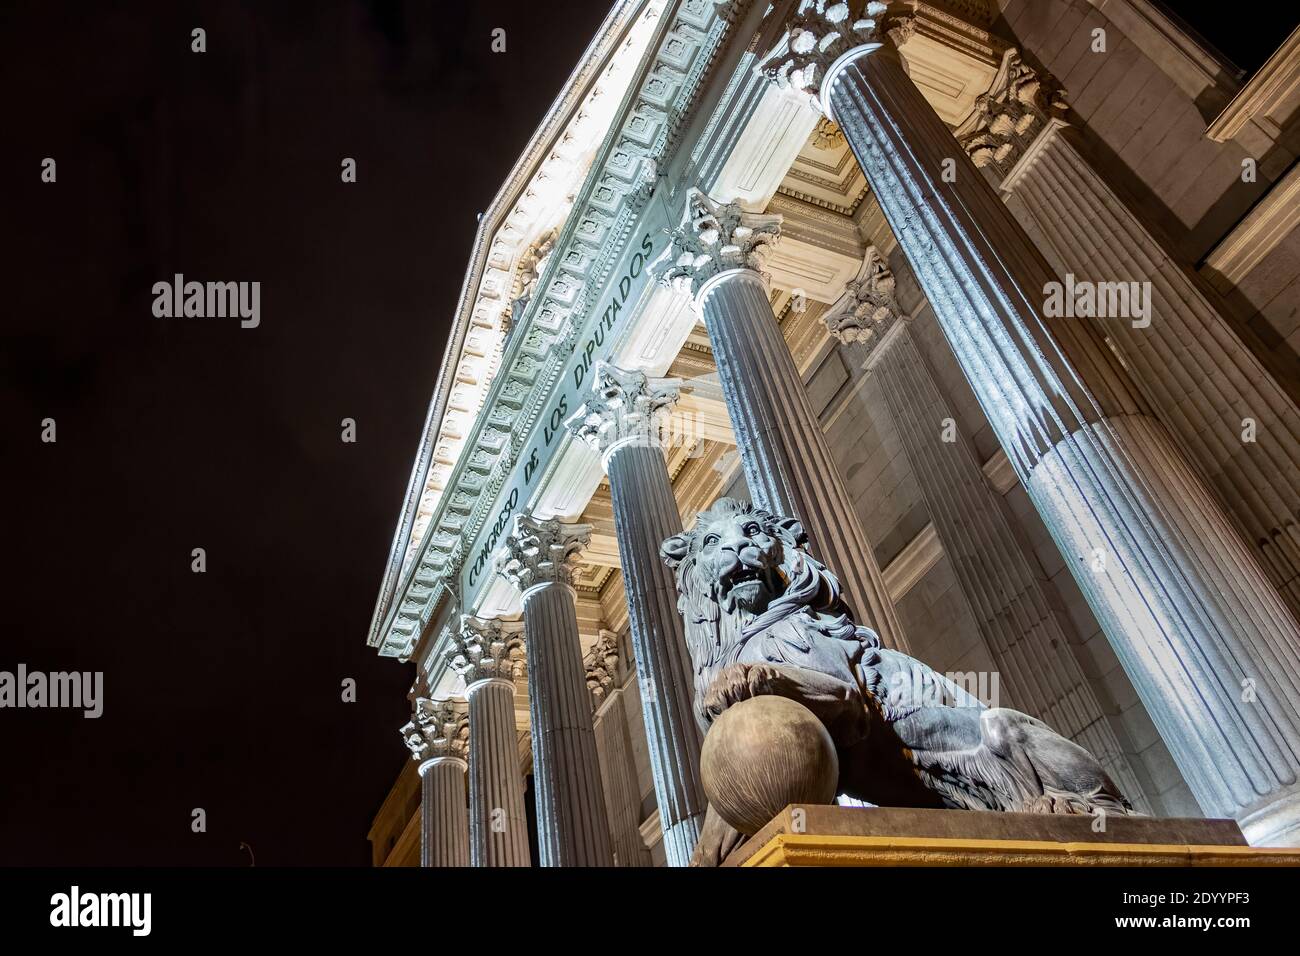 Vista notturna della facciata principale del Palacio de la Cortes, palazzo dei tribunali, sede del Congresso dei deputati a Madrid, Spagna, con le colonne e o Foto Stock